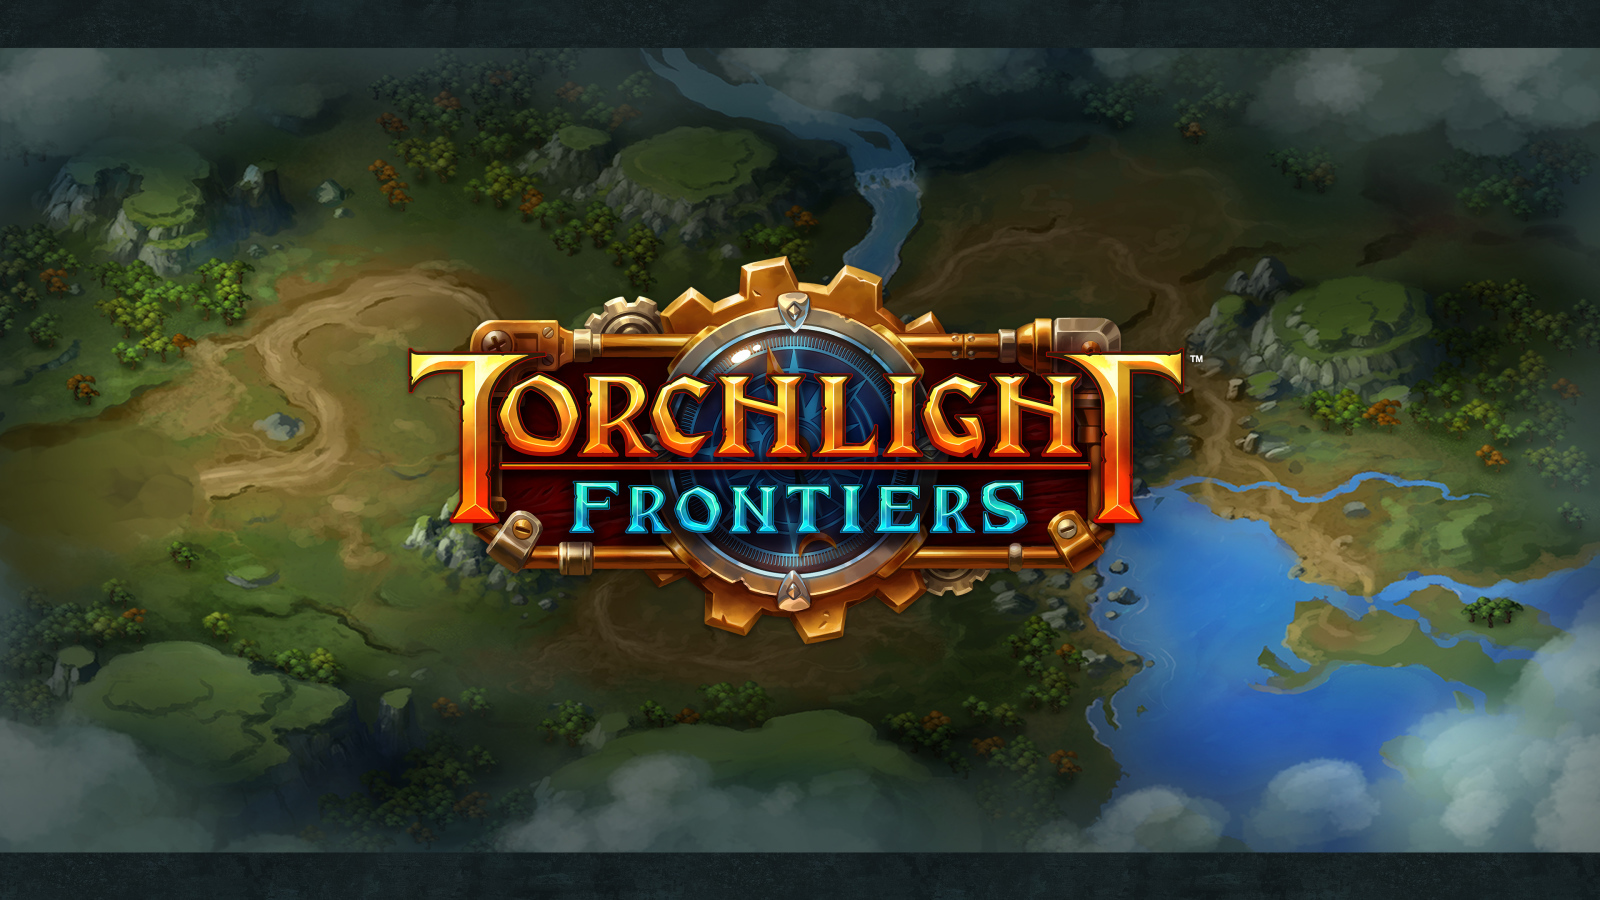 Логотип компьютерной игры Torchlight Frontiers, 2019